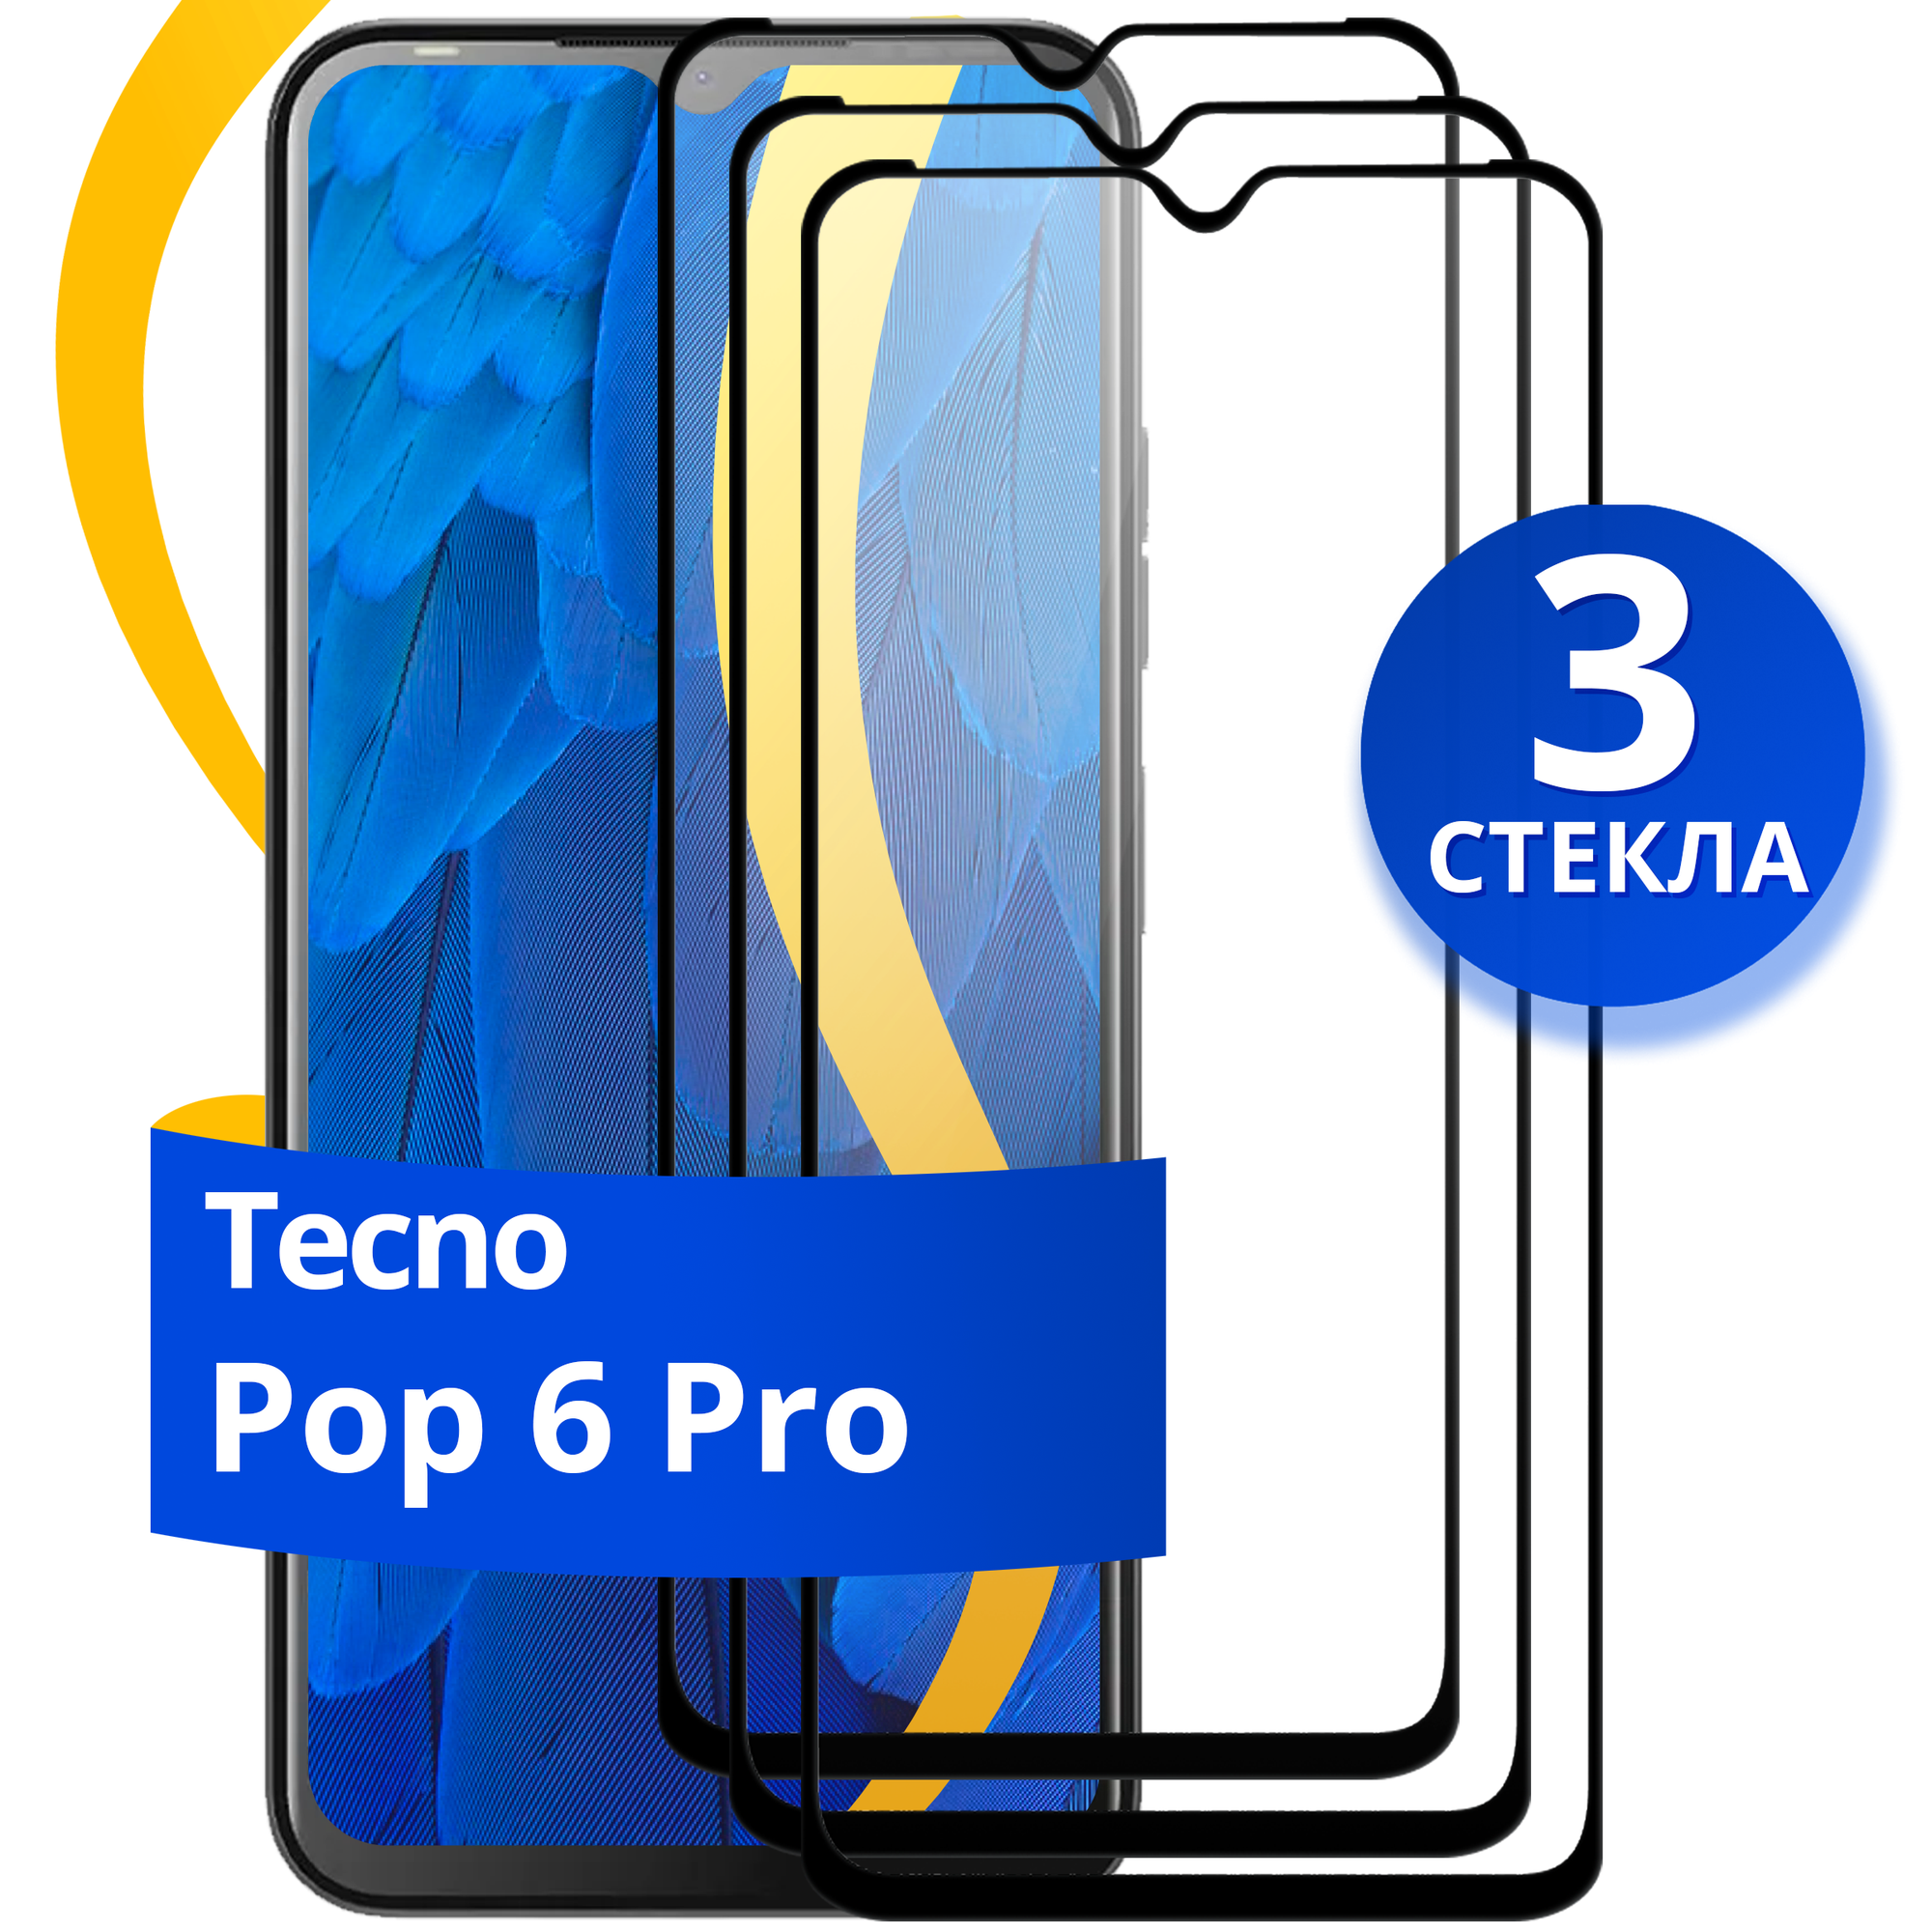 Комплект 2 шт защитное стекло для телефона Tecno Pop 6 Pro / Набор противоударных стекол на смартфон Техно Поп 6 Про с олеофобным покрытием